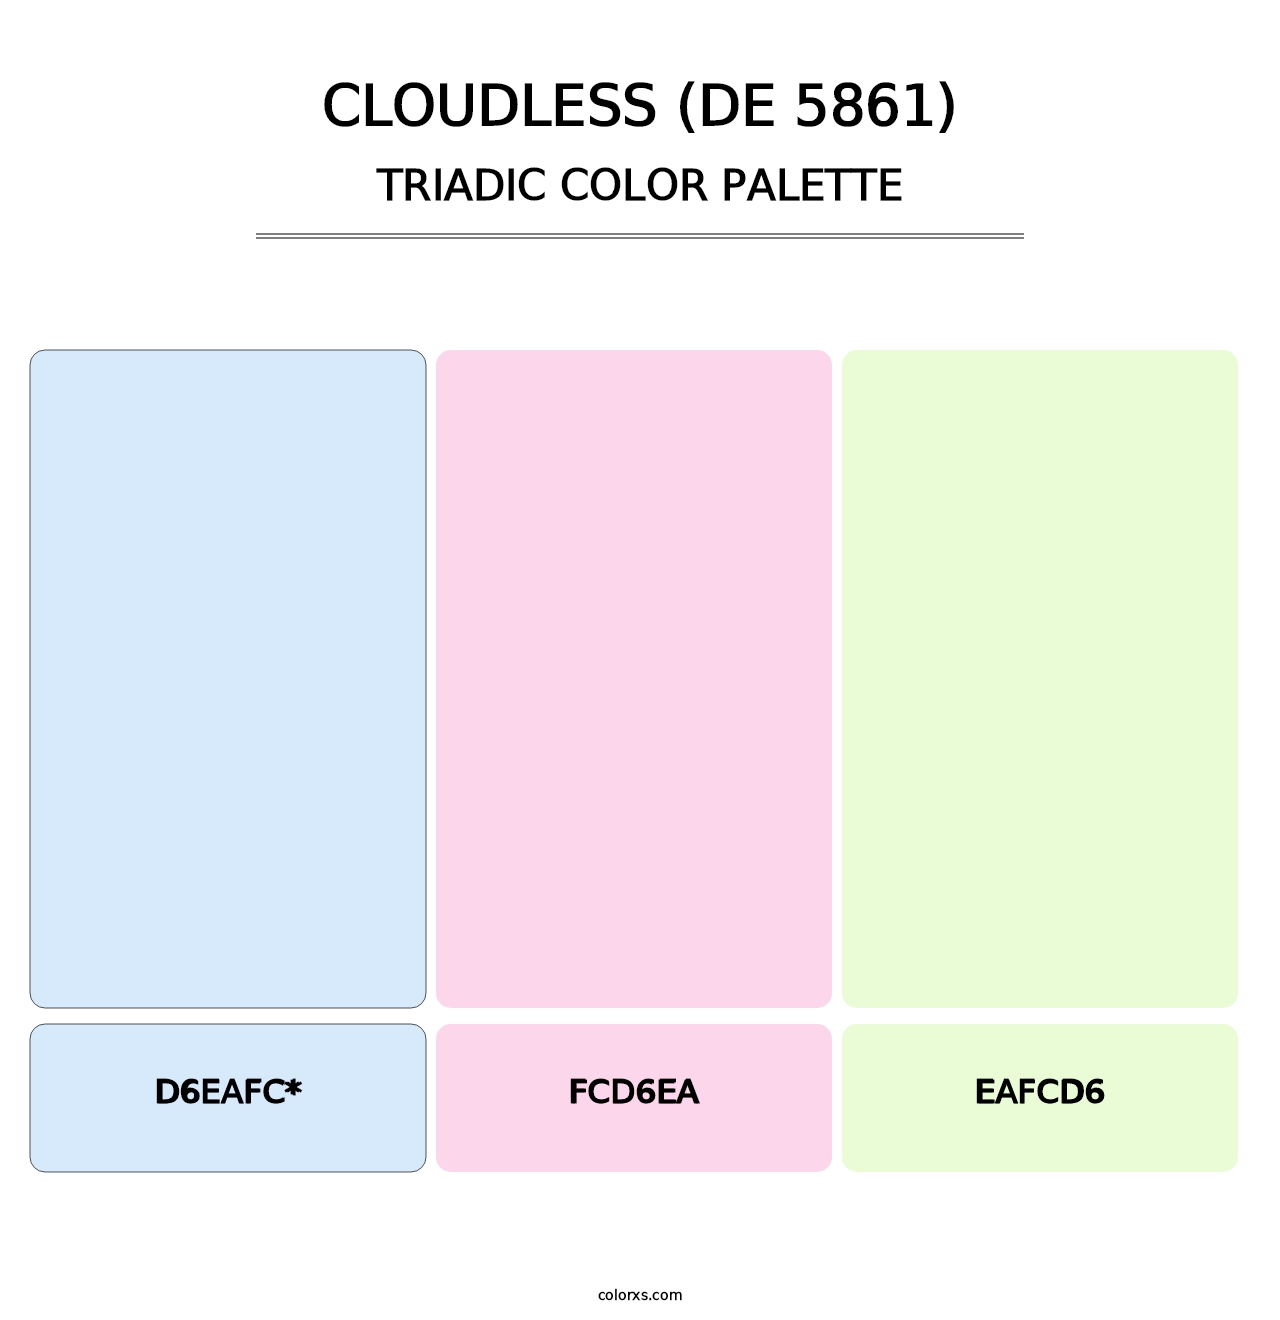 Cloudless (DE 5861) - Triadic Color Palette